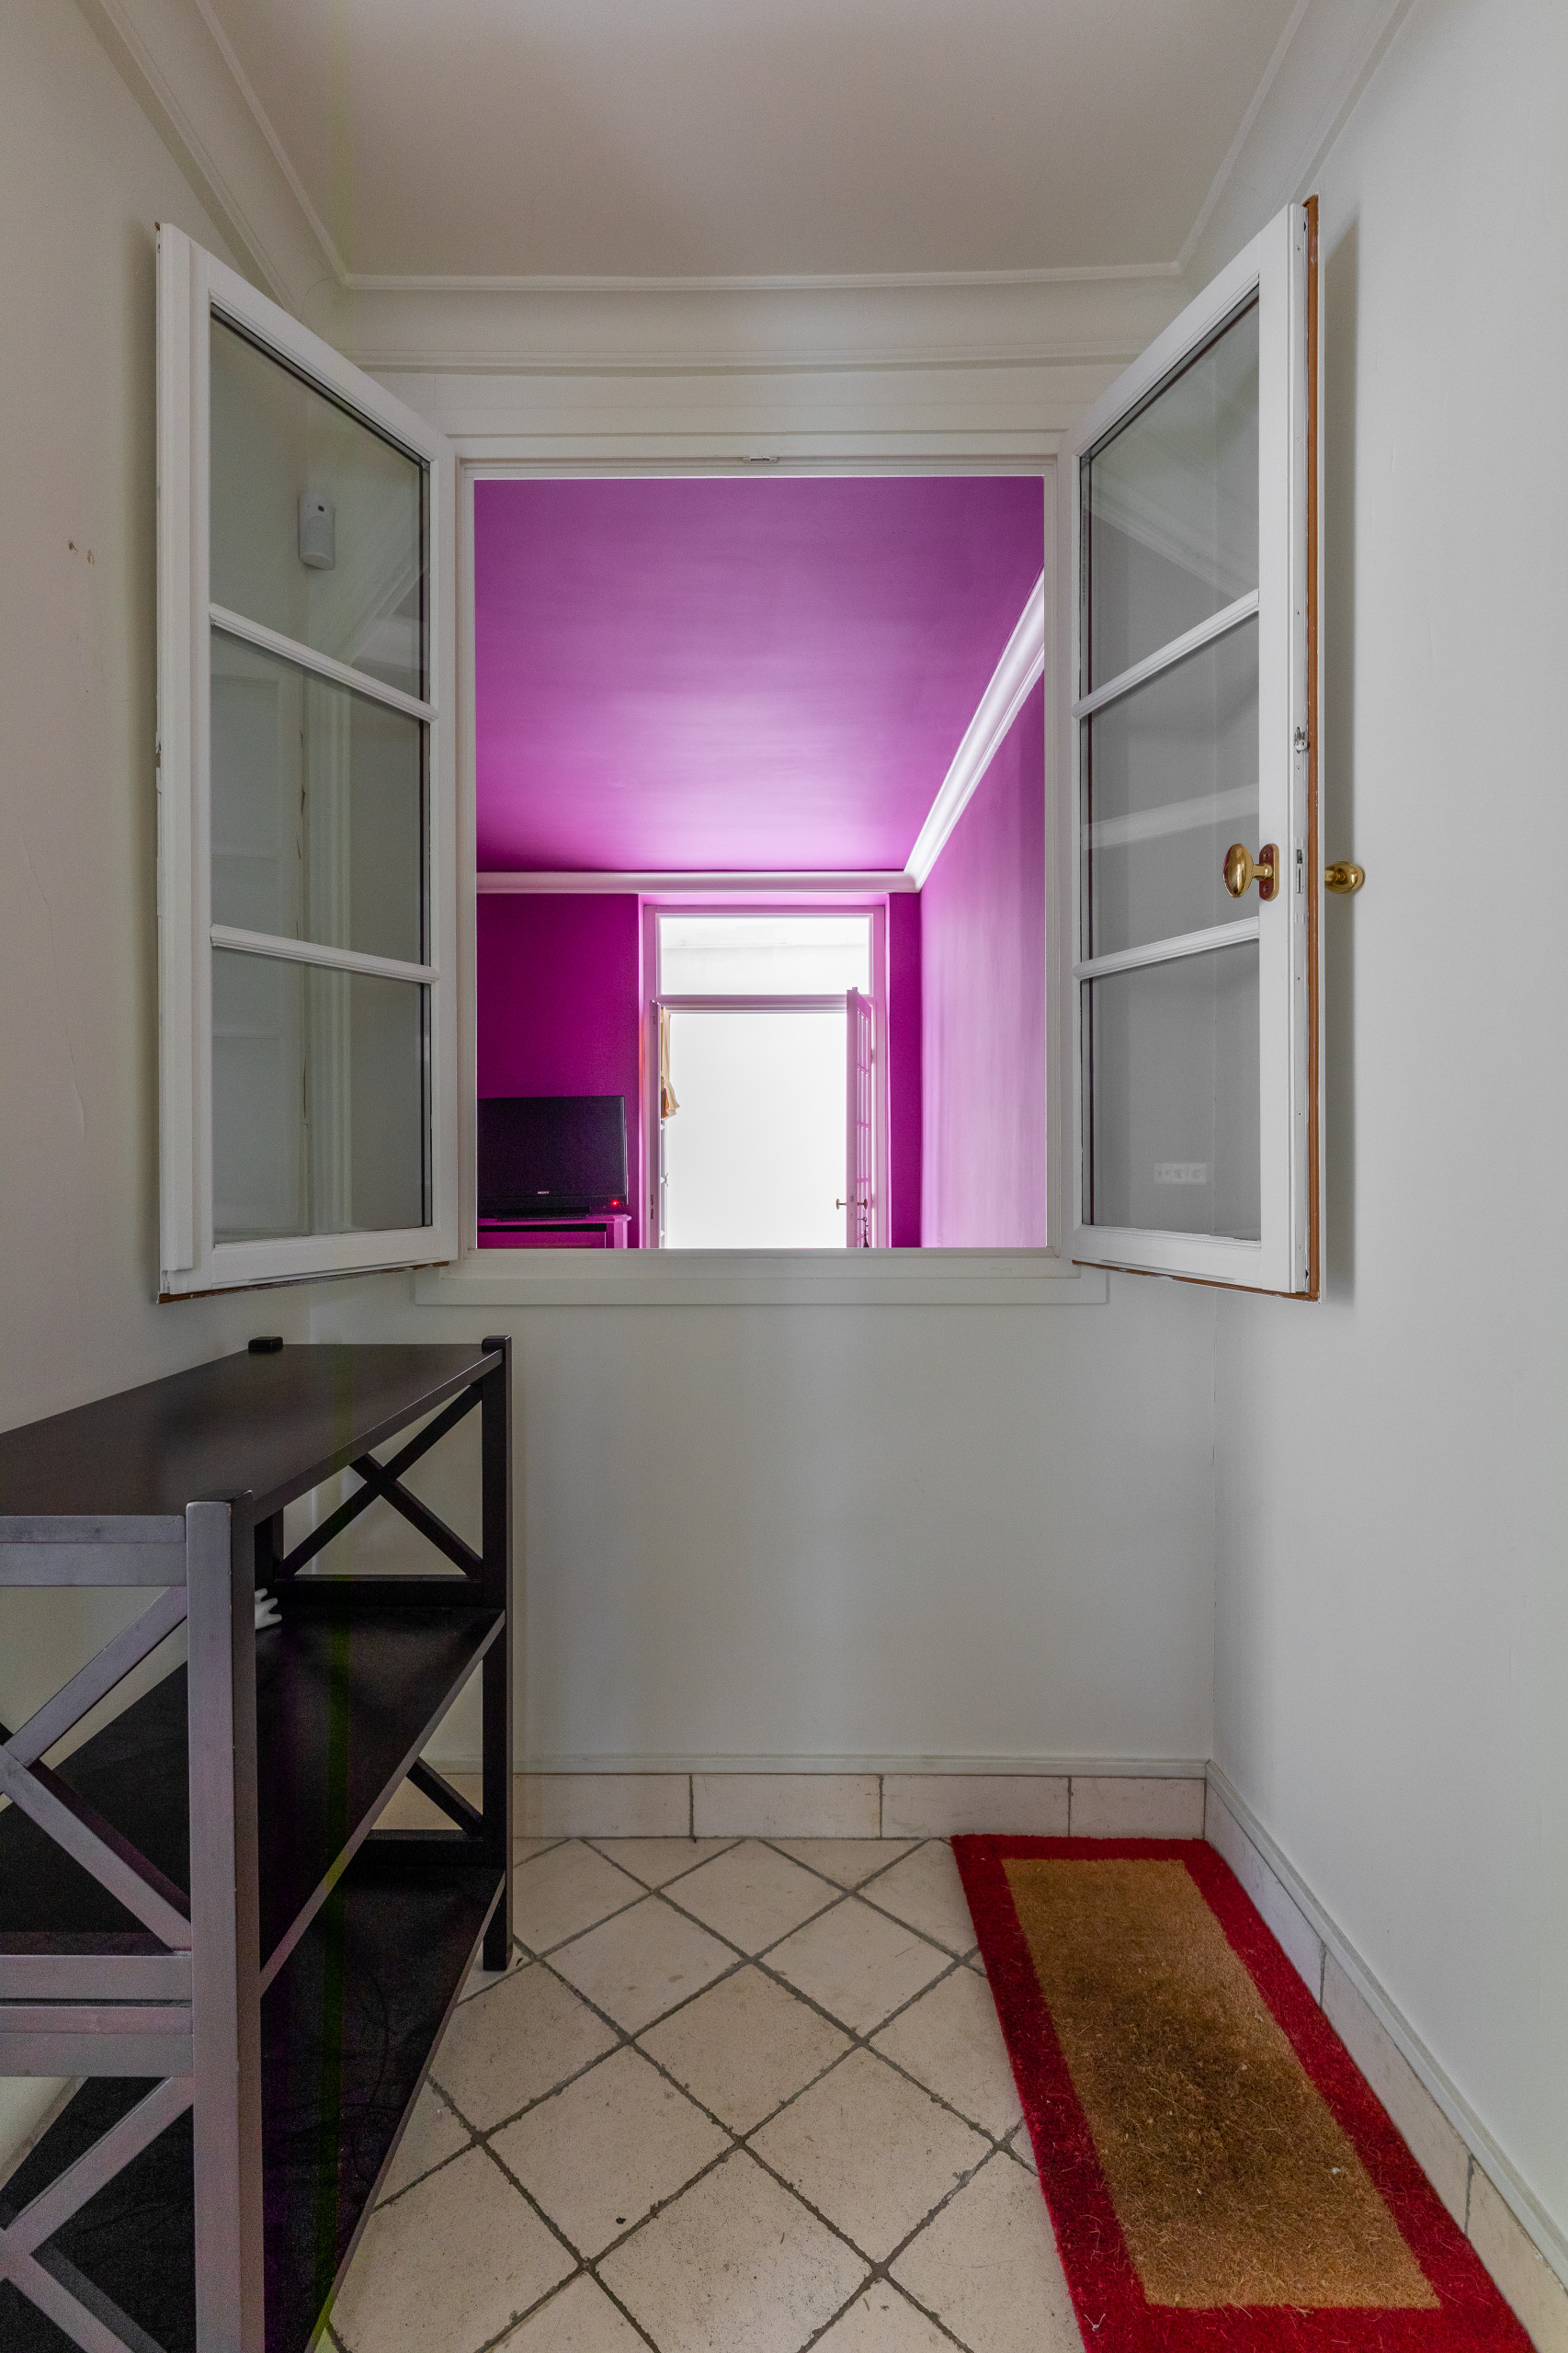 Appartement Verneuil 78 m2 à Paris 7 ème - Asie contemporain